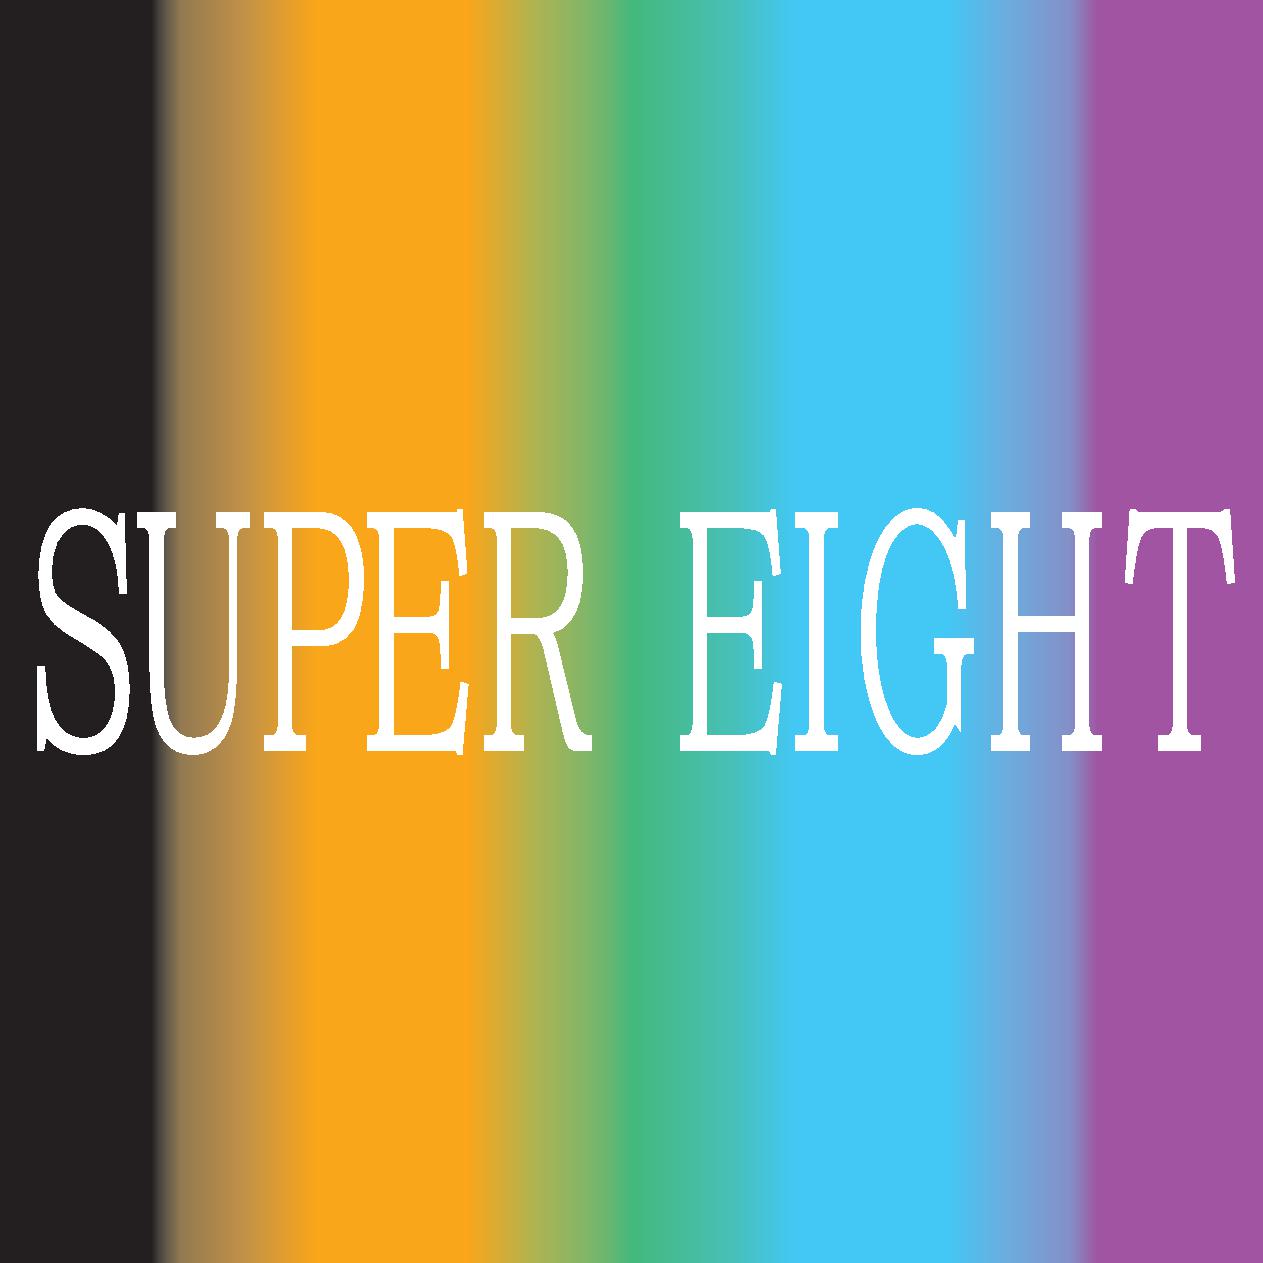 SUPER EIGHT大倉忠義「まだまだ色んな才能が眠っています」 若手プロデュースでみつけた希望の光